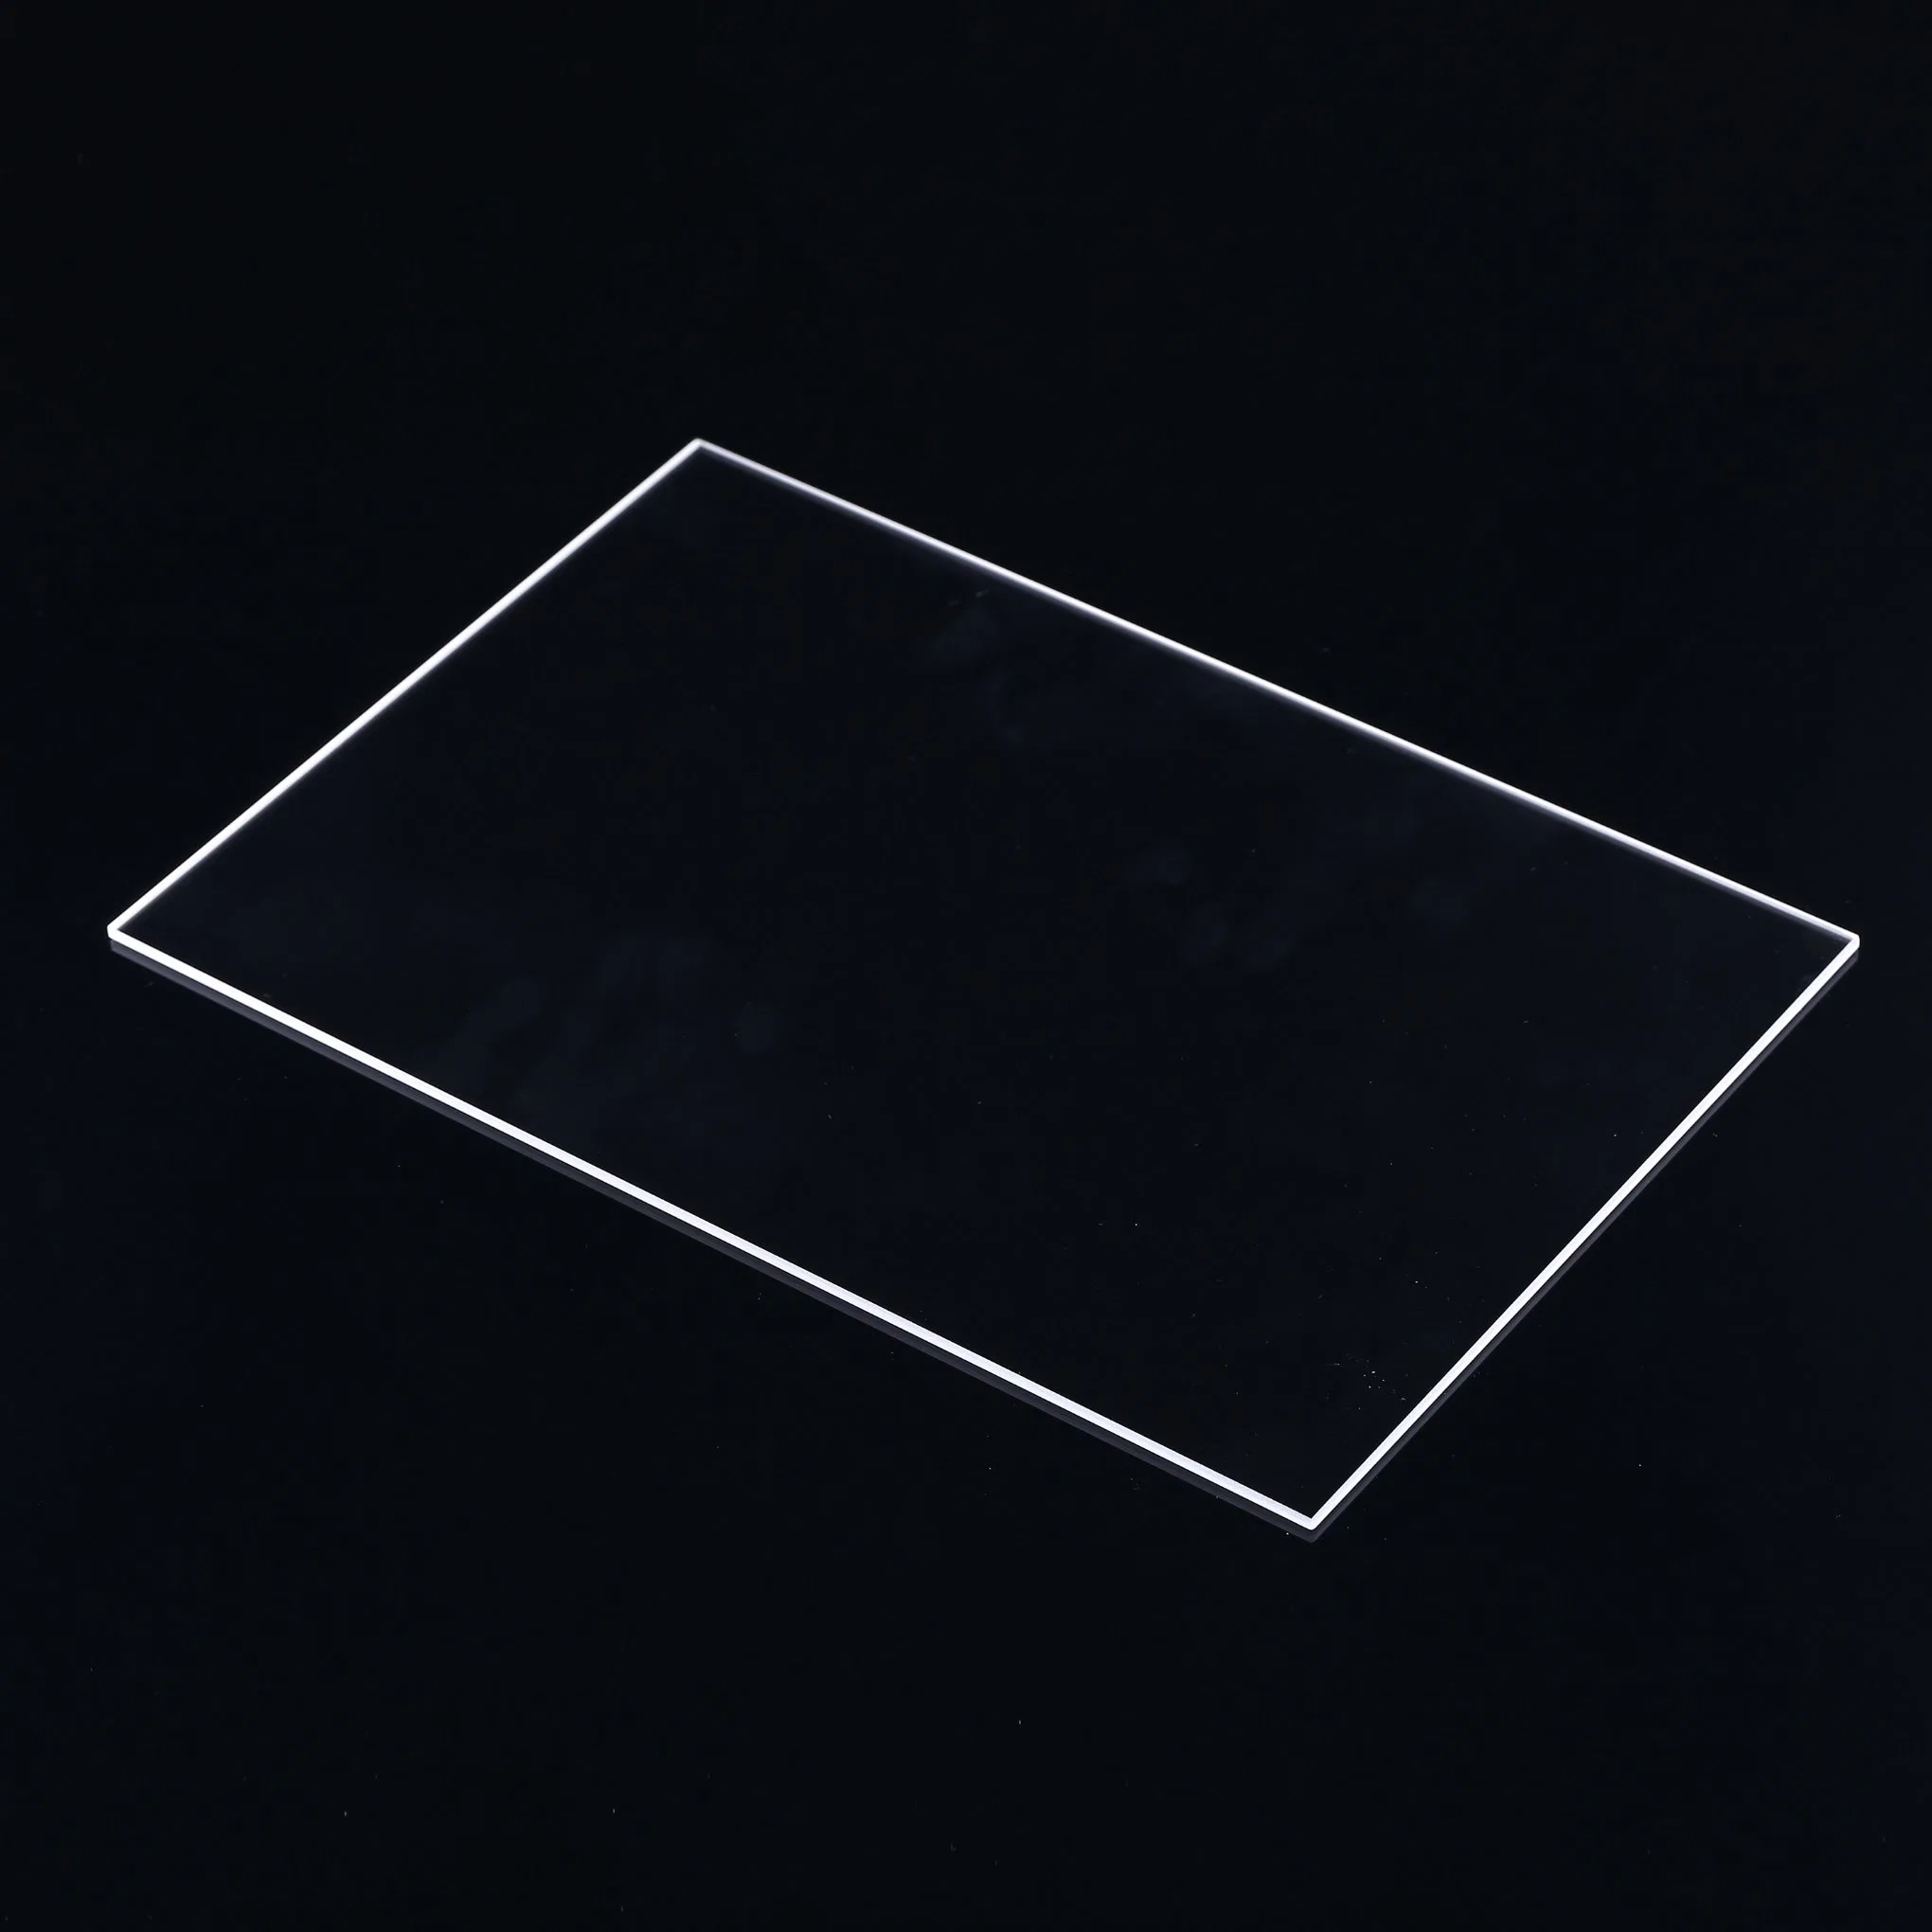 UV transparente cristal de cuarzo de la plaza de la placa de calefacción de la placa de cristal de cuarzo.